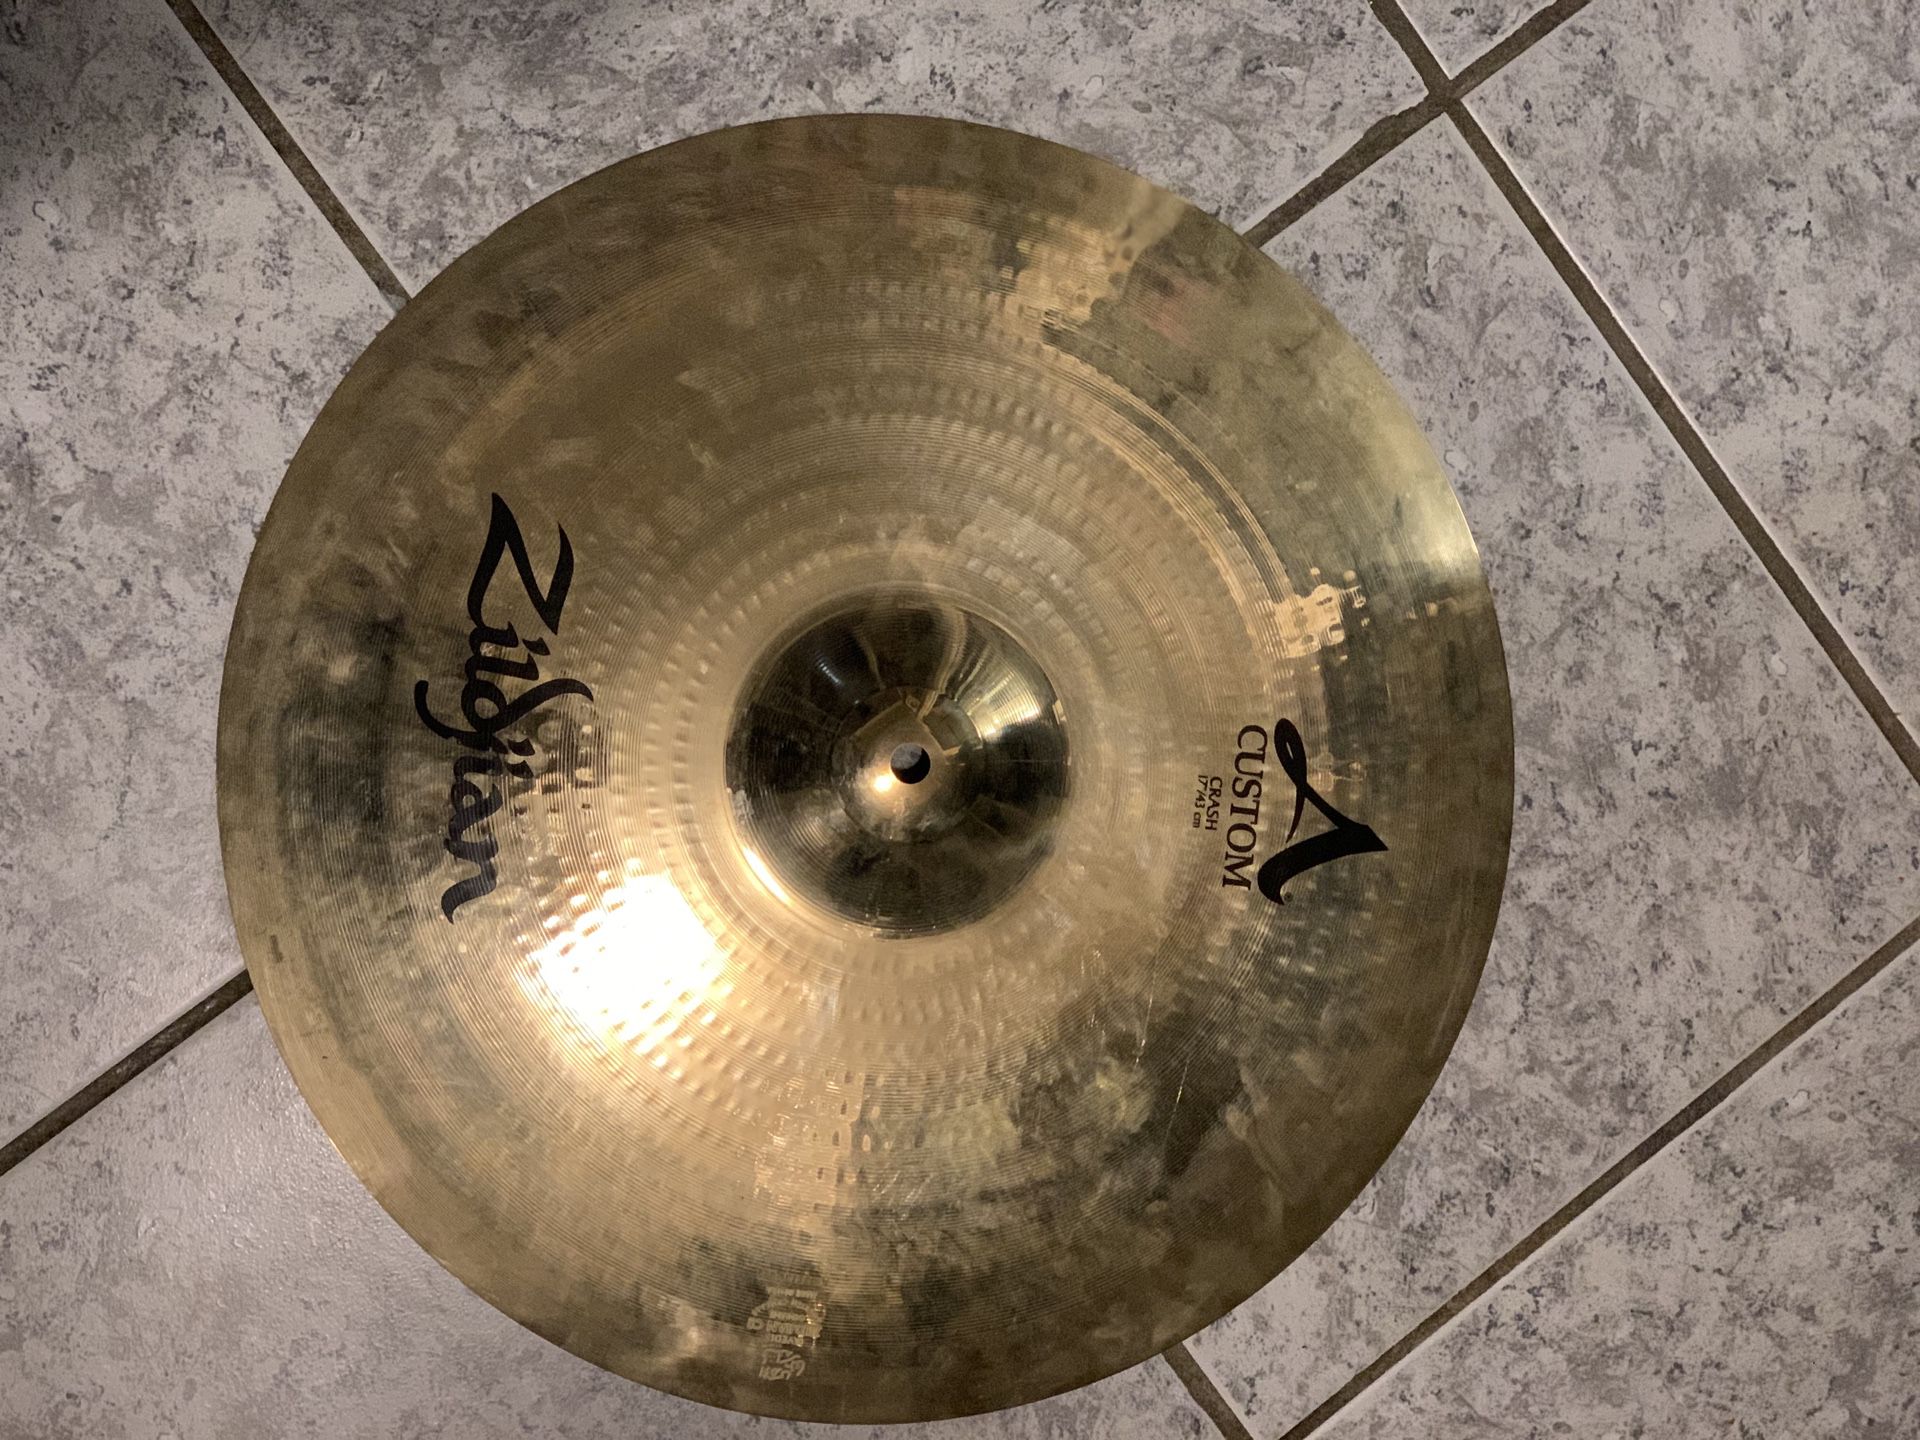 Crash cymbal 17”